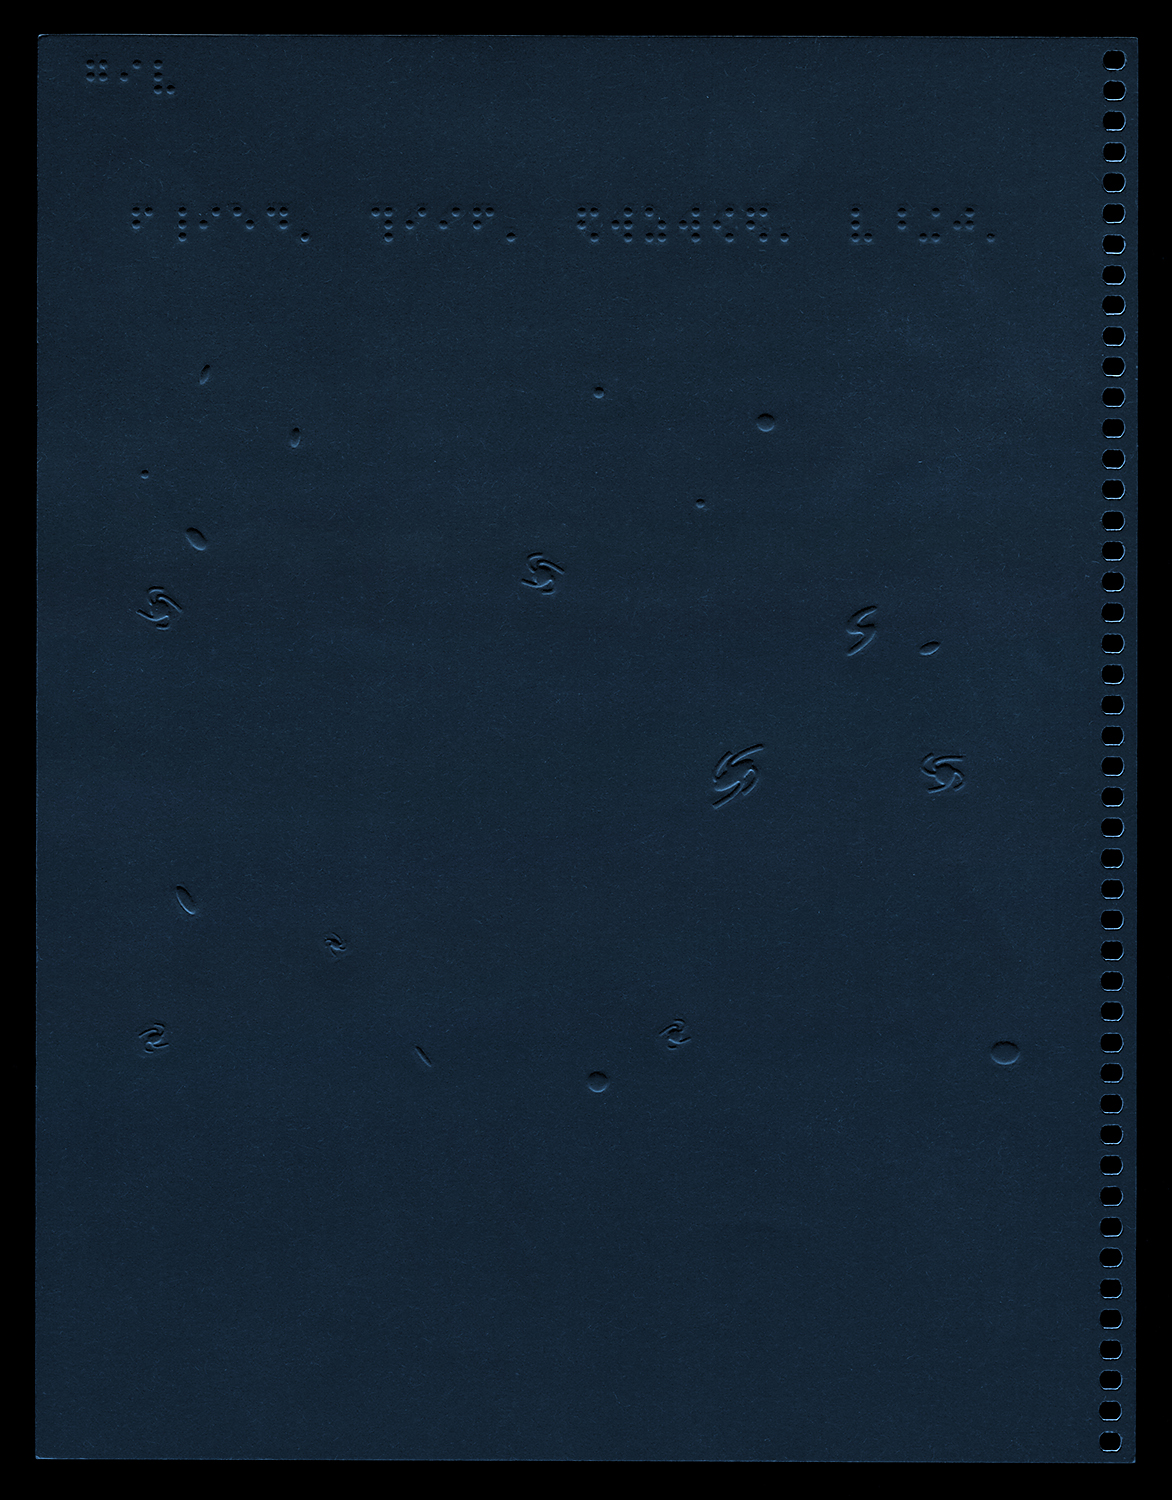 Hubble Deep Field in Braille